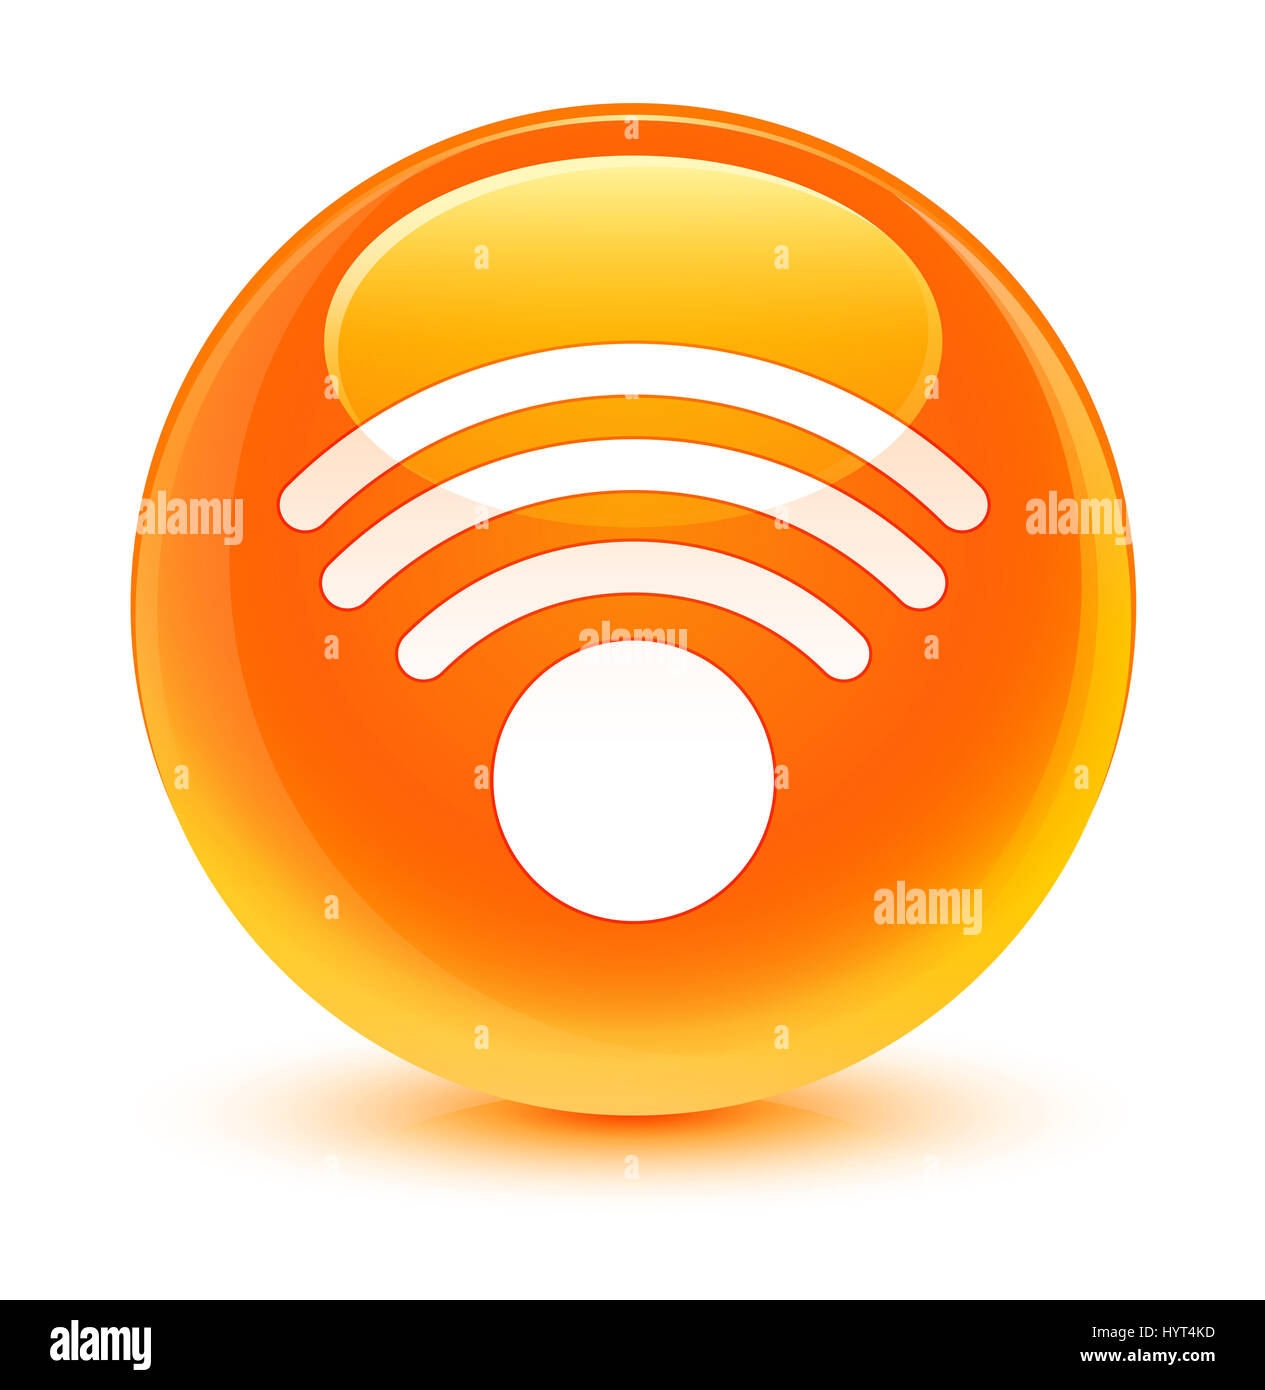 Connexion Wi-Fi au réseau local isolé sur l'icône bouton rond orange vitreux abstract illustration Banque D'Images